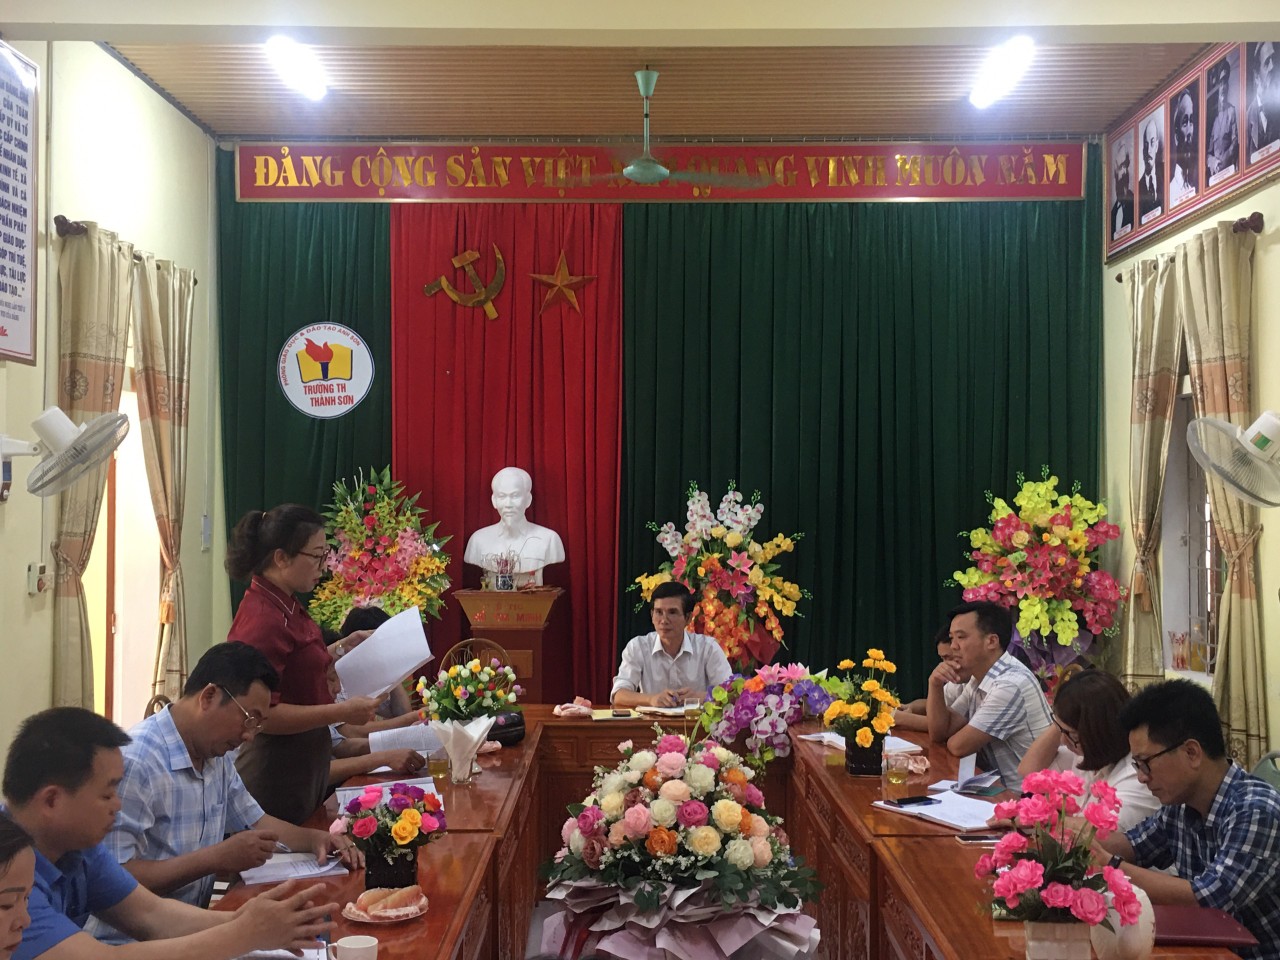 Sở Giáo dục & Đào tạo tỉnh Nghệ An tổ chức đánh giá ngoài để công nhận trường đạt kiểm định chất lượng giáo dục và trường đạt chuẩn Quốc gia